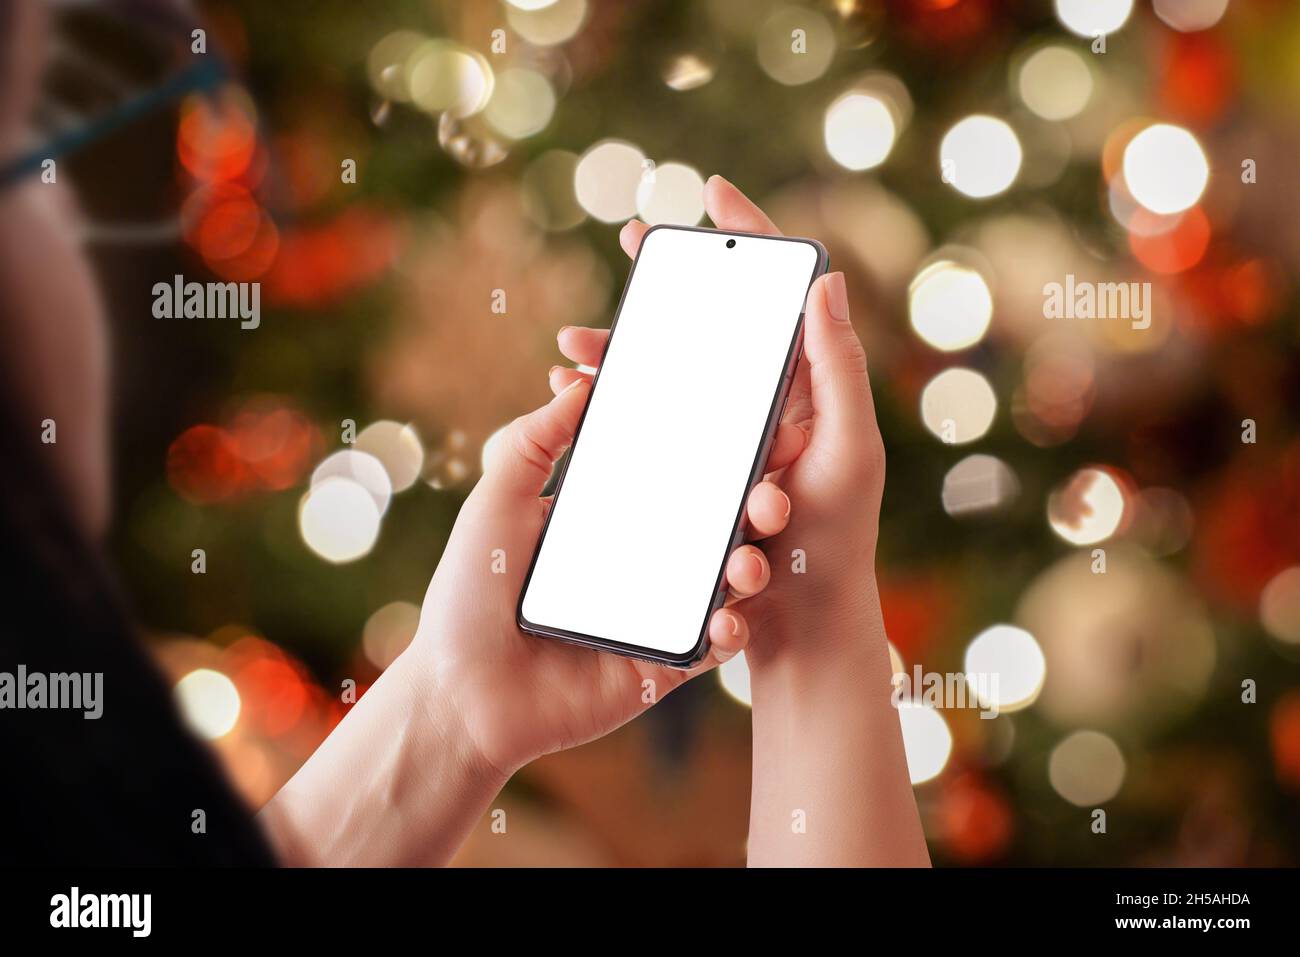 Telefono mockup in mani donna con un sacco di luci di Natale in background. Display isolato con smartphone integrato Foto Stock